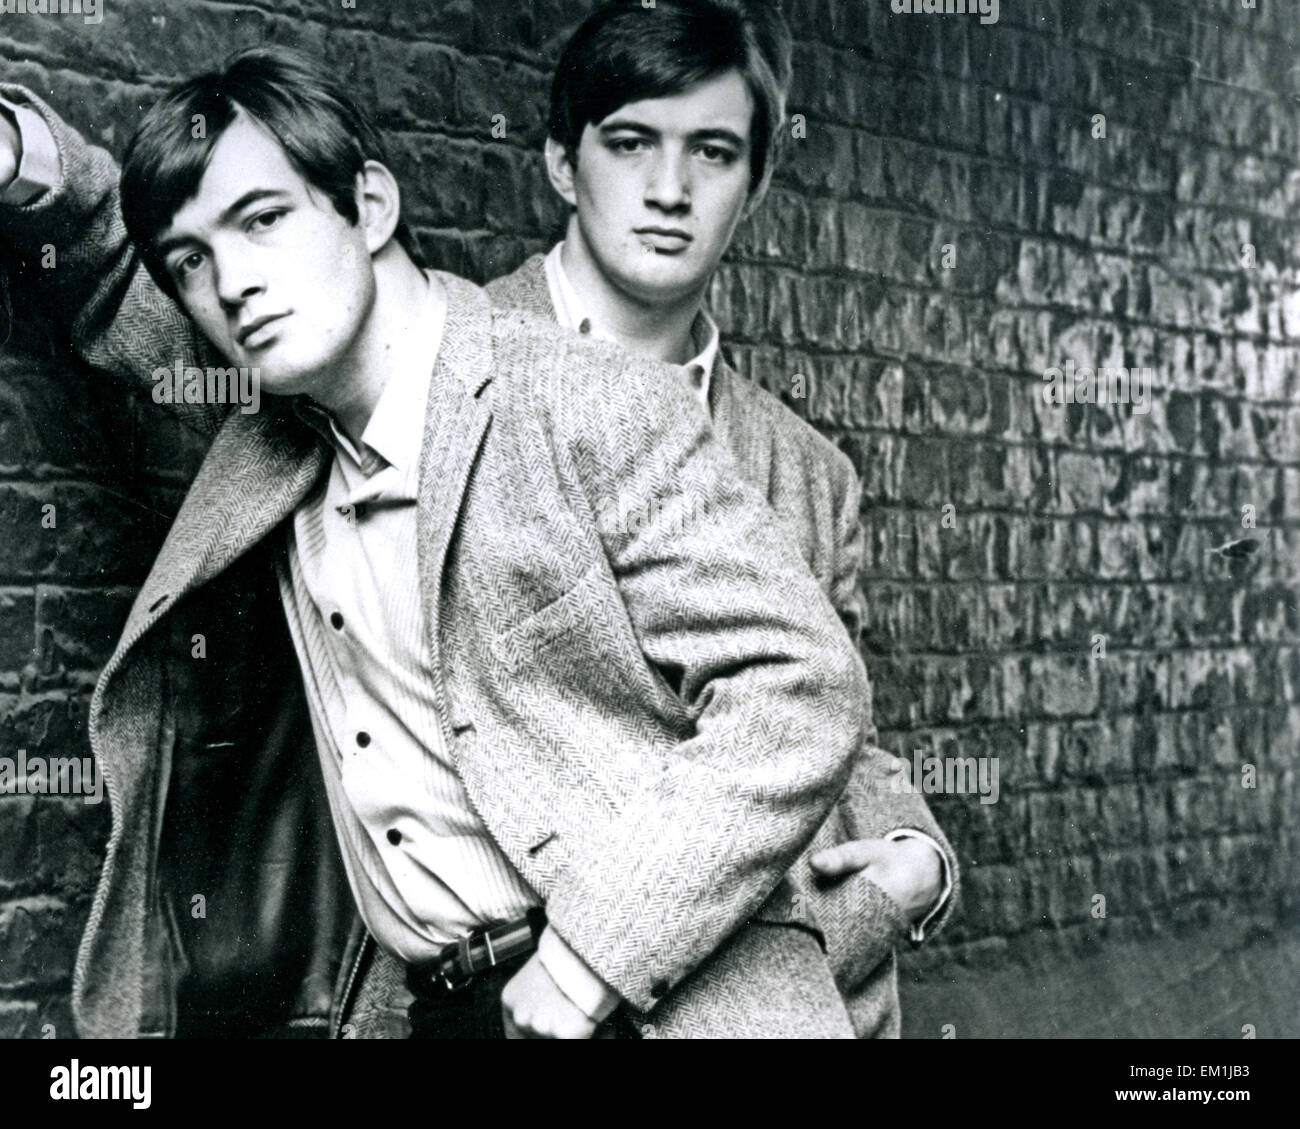 Paolo e BARRY RYAN foto promozionale di UK duo pop circa 1965 Foto Stock